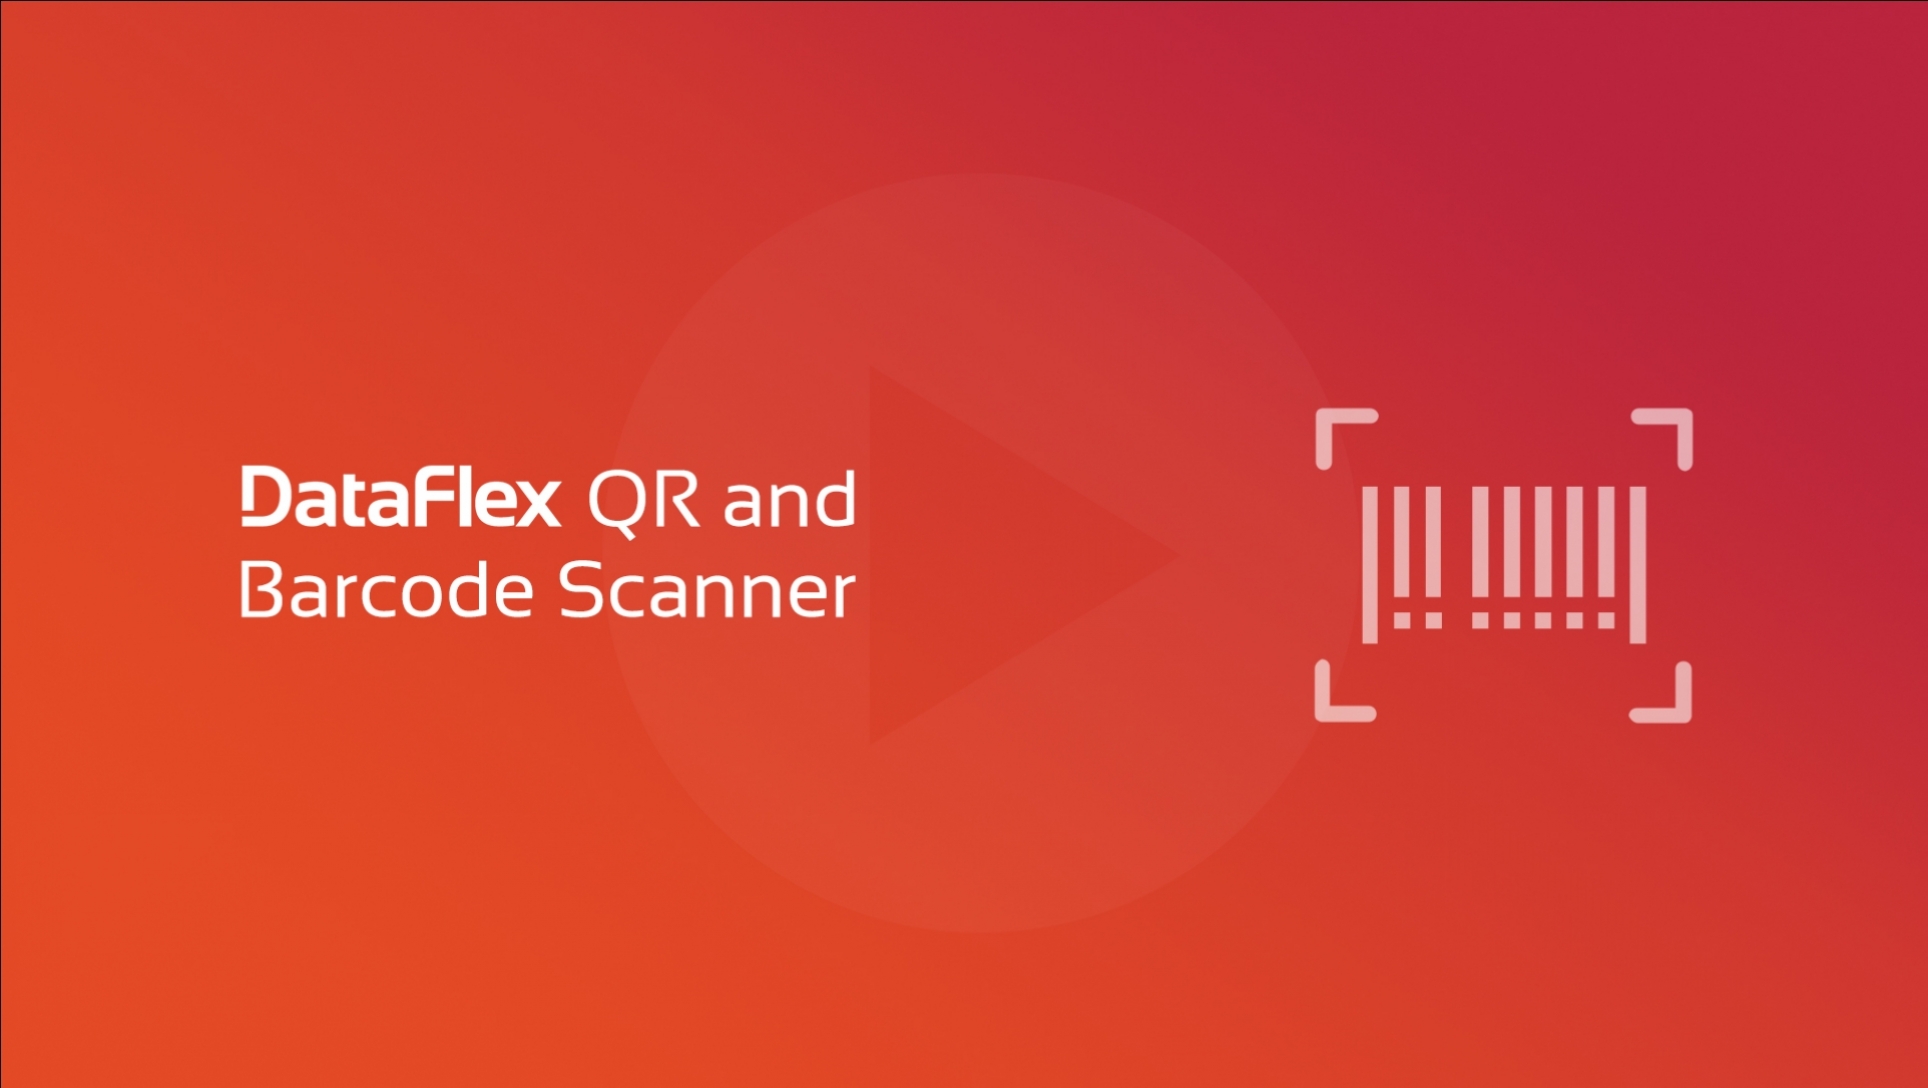 DataFlex QR and Barcode Scanner